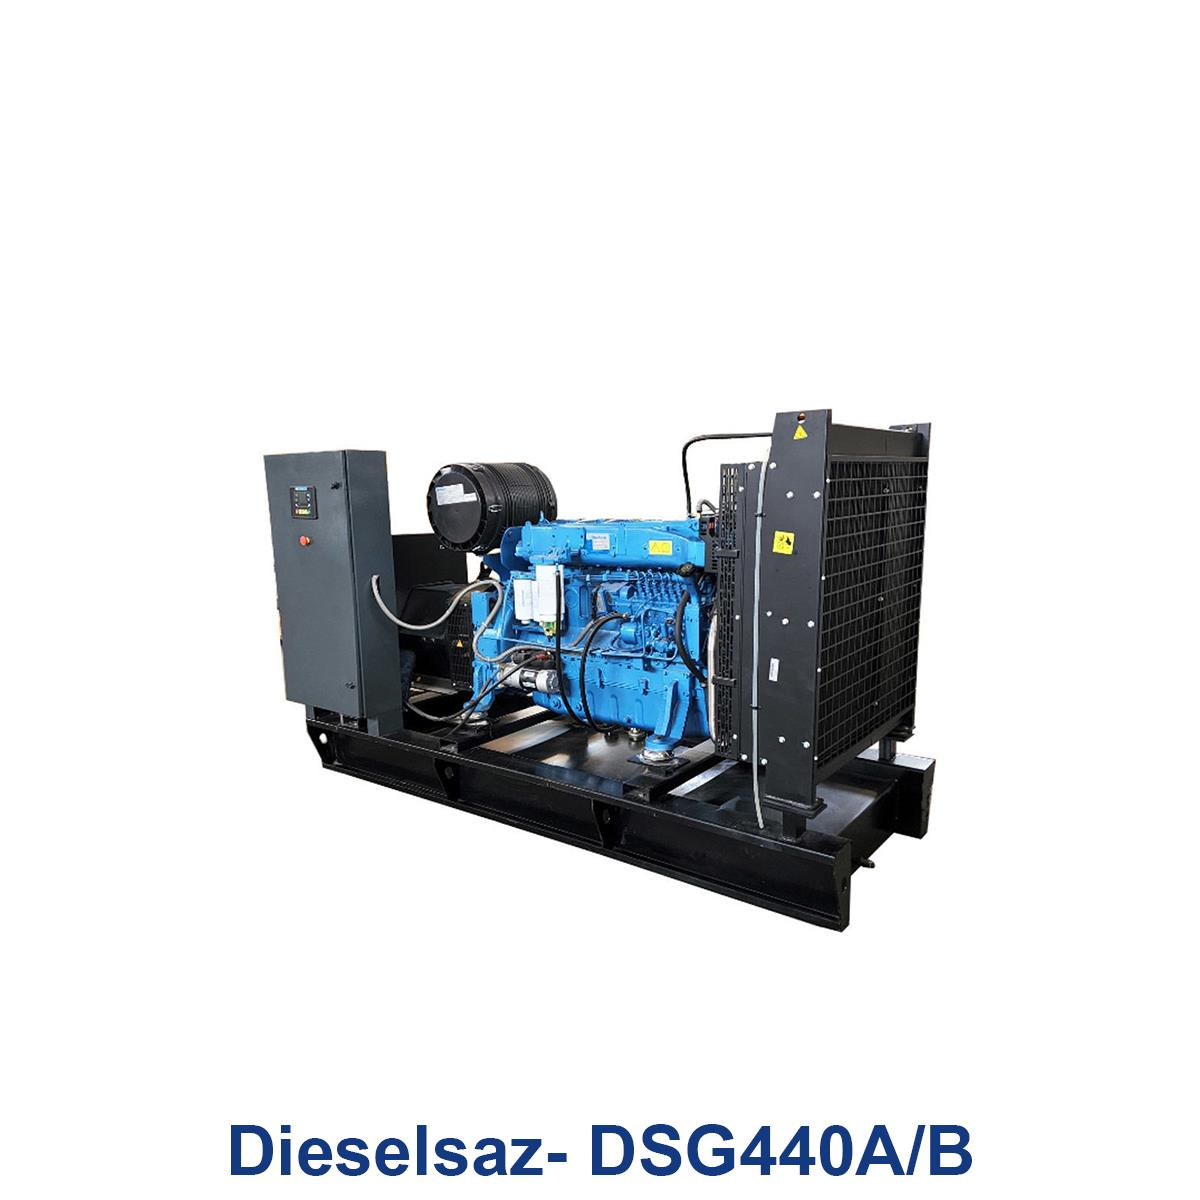 موتور-ژنراتور-کوپله-دیزل-ساز-Dieselsaz--DSG440A-B